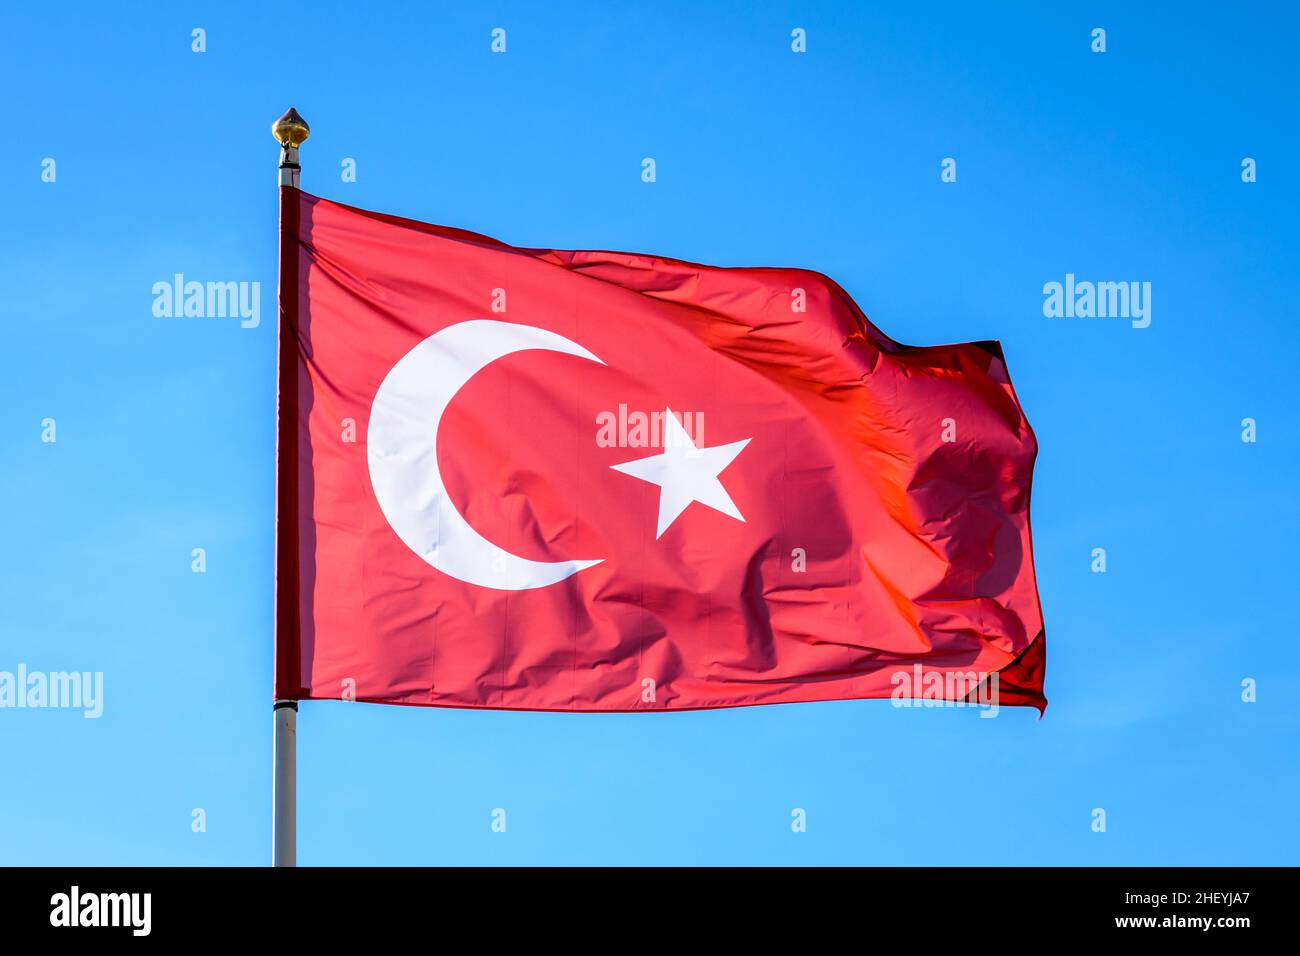 La bandiera nazionale della Turchia vola al vento a pieno palo contro il cielo blu. Foto Stock